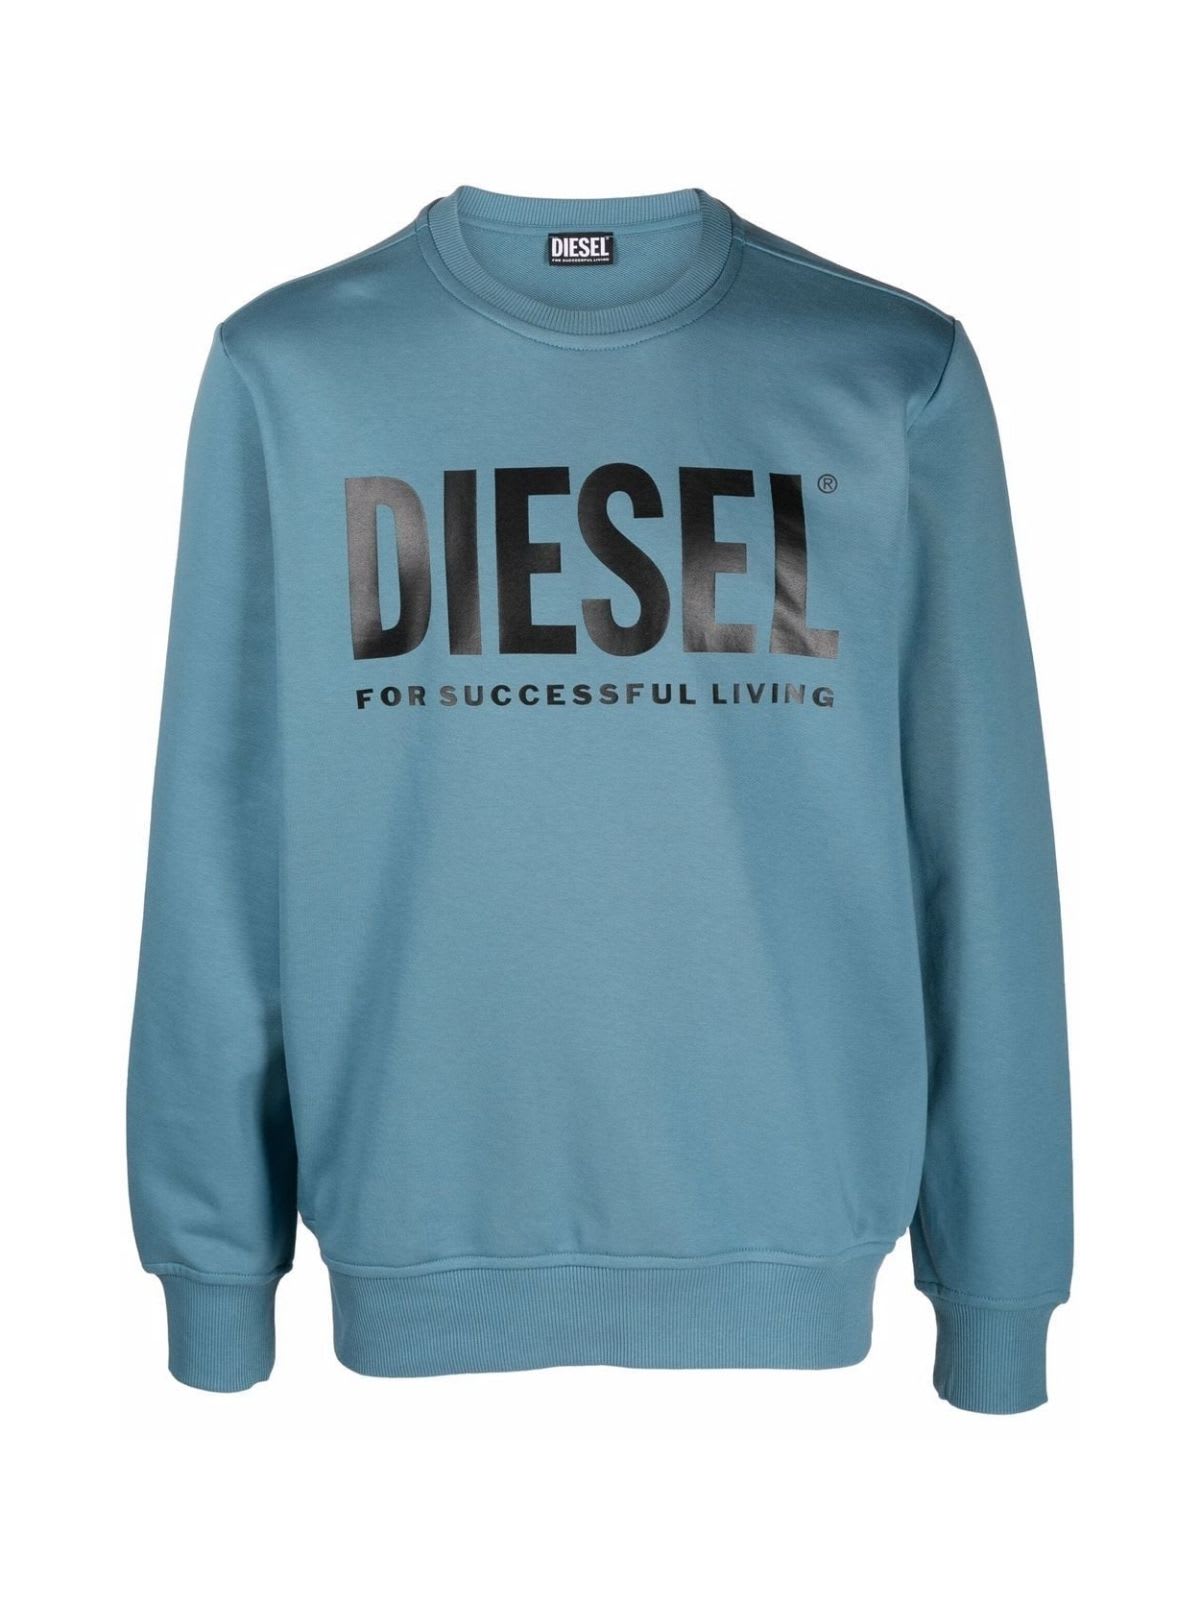 Diesel S Girk Ecologo Crew Neck Sweatshirt